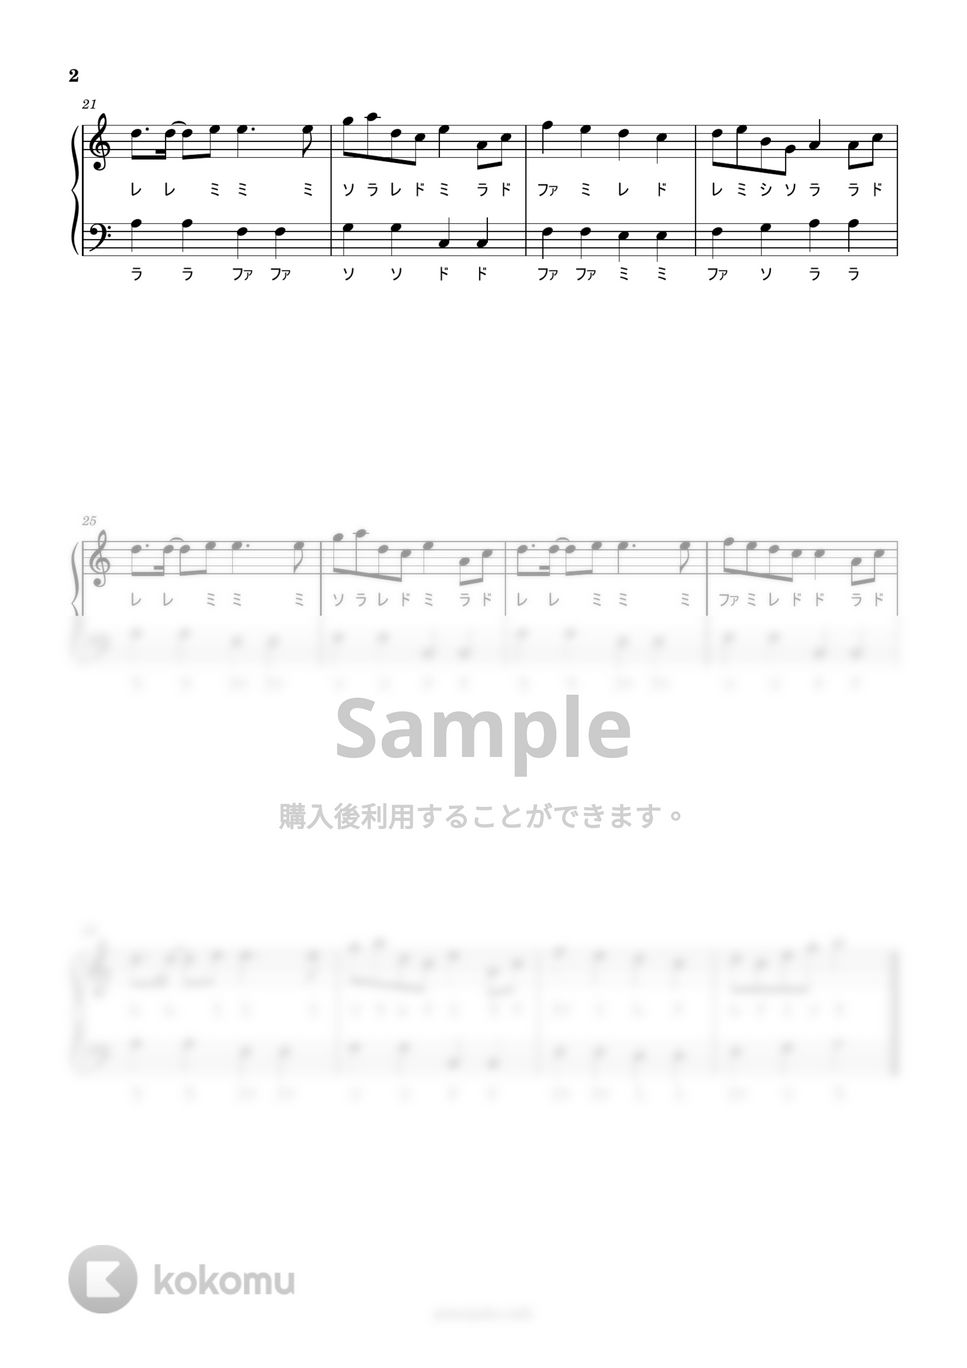 黒うさ - 千本桜 (ドレミ付き簡単楽譜) by ピアノ塾